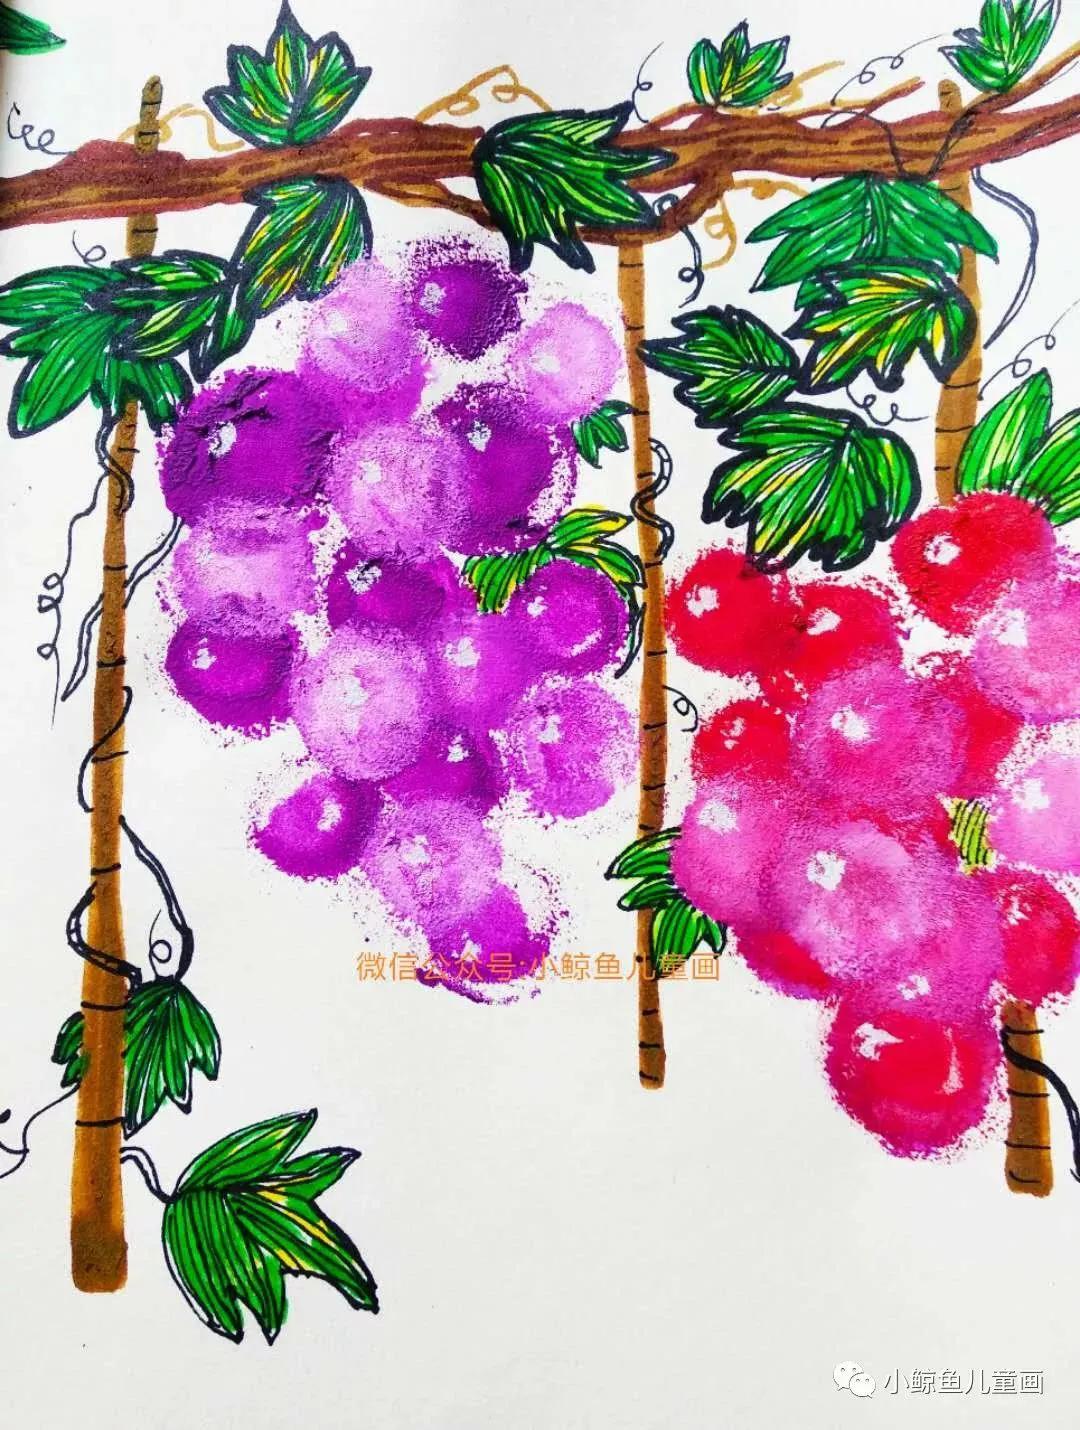 综合创意教程—葡萄架上甜葡萄,一起来画葡萄绘画呀